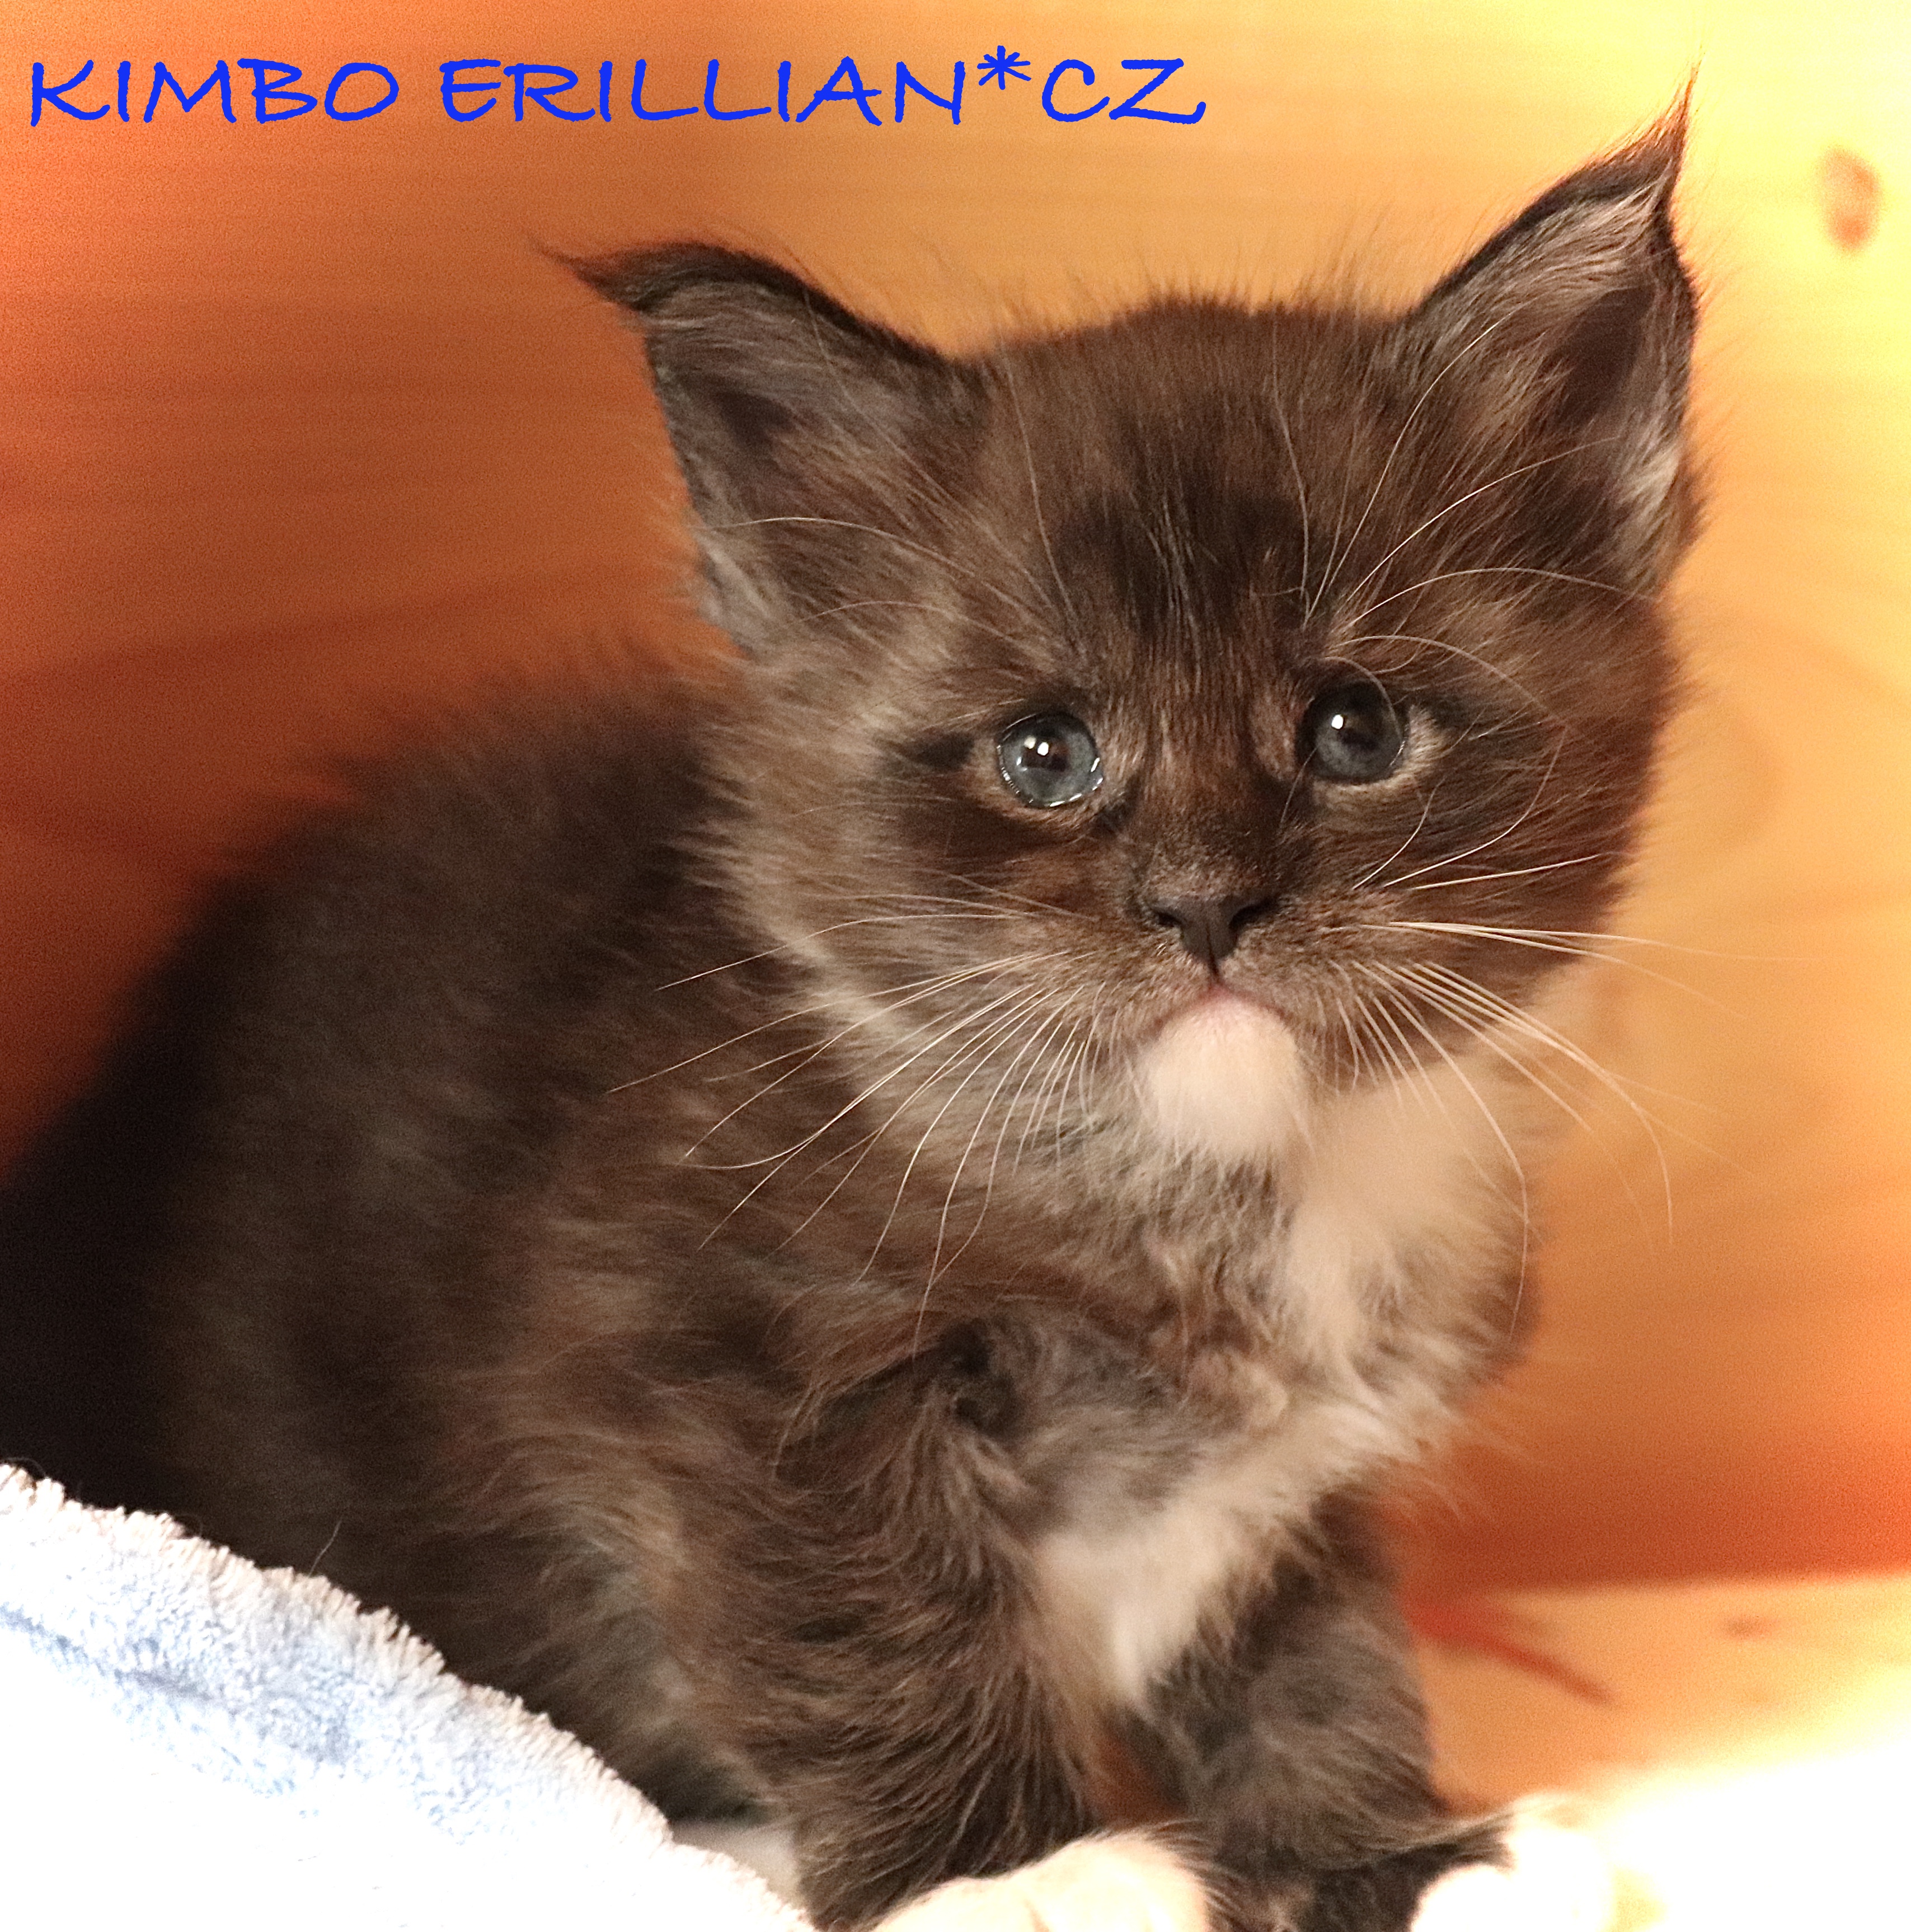 fotka kočky VRH K: KIMBO VON ERILLIAN*CZ